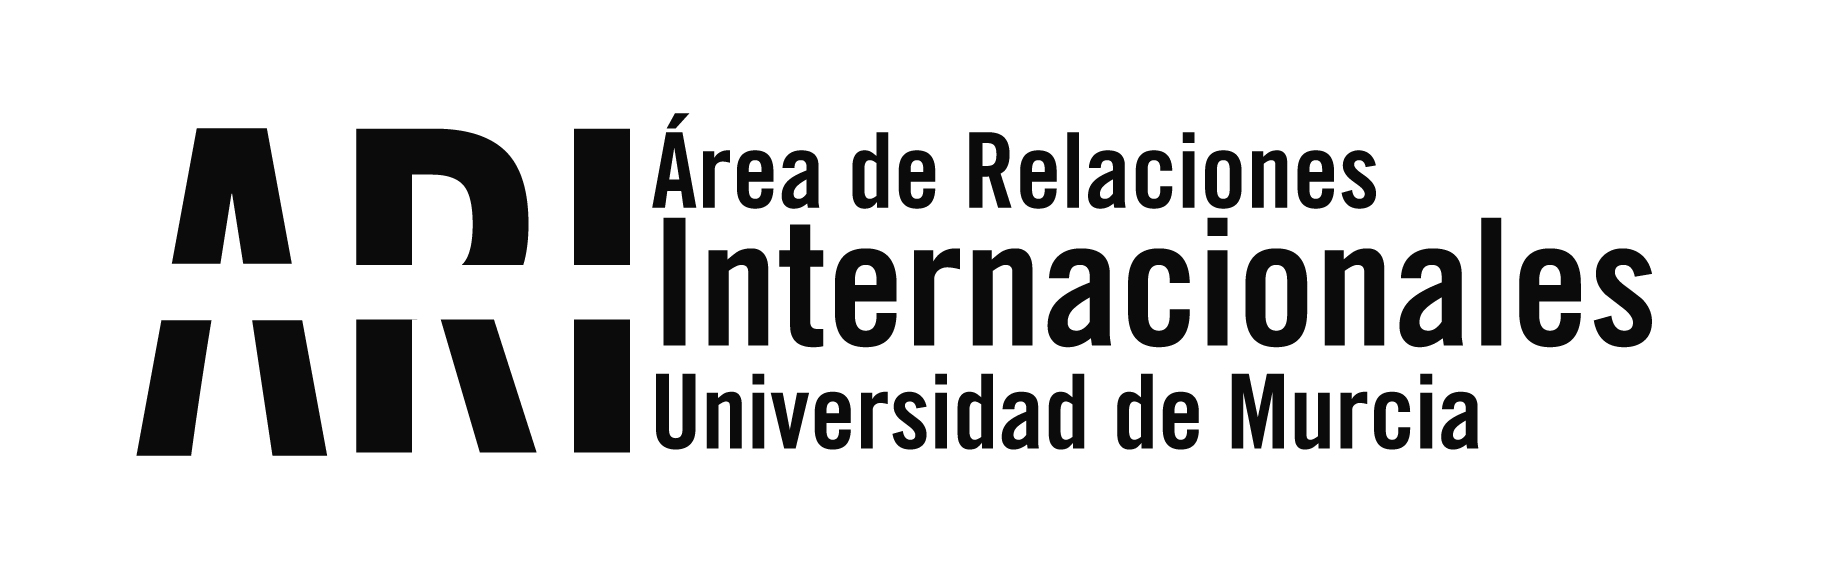 La Universidad de Murcia dará ayuda académica a la Universidad Nacional de Kiev - Área de Relaciones Internacionales